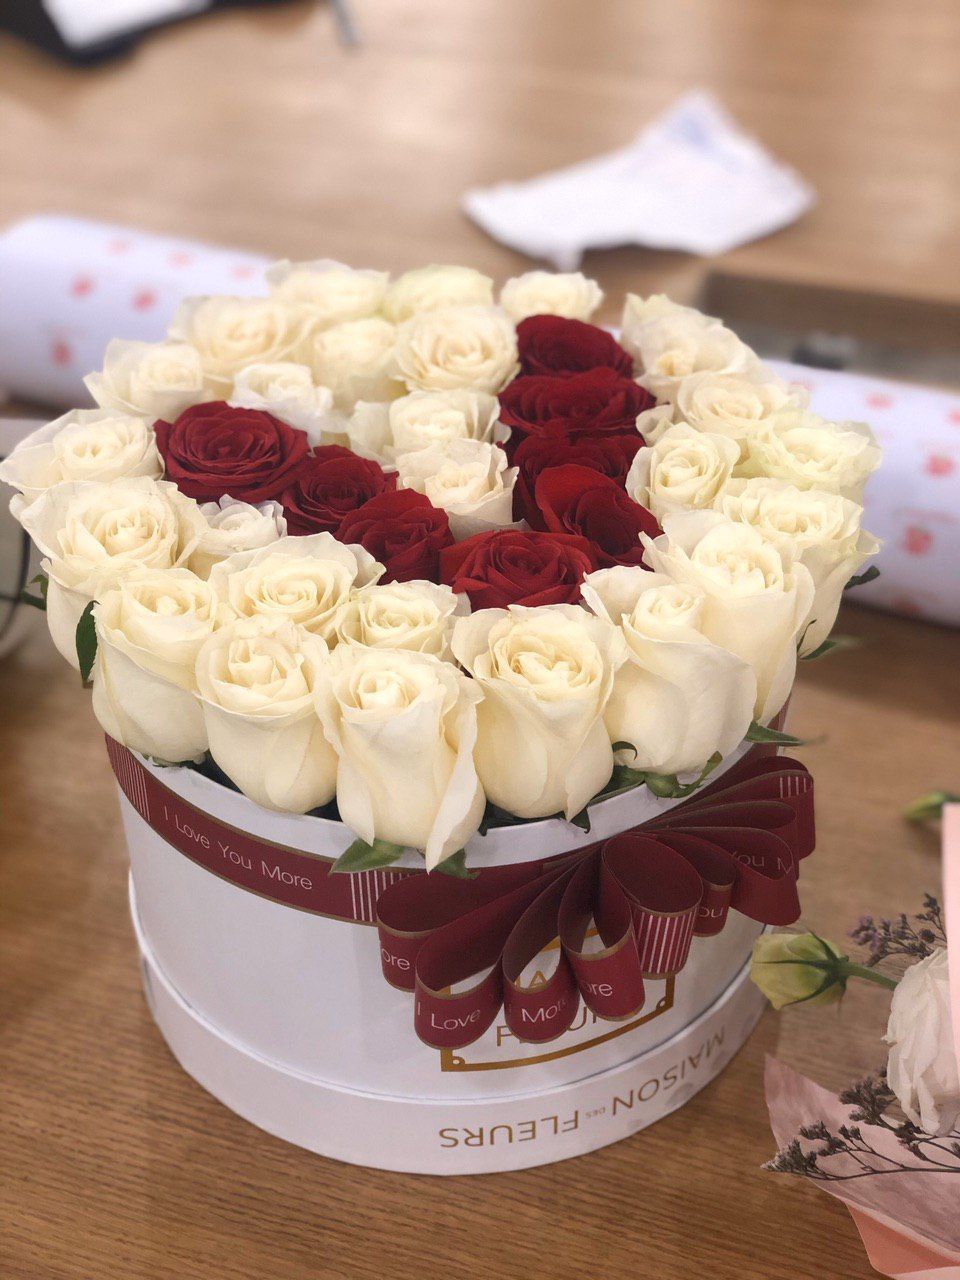 Белые розы с буквой "V" в коробке